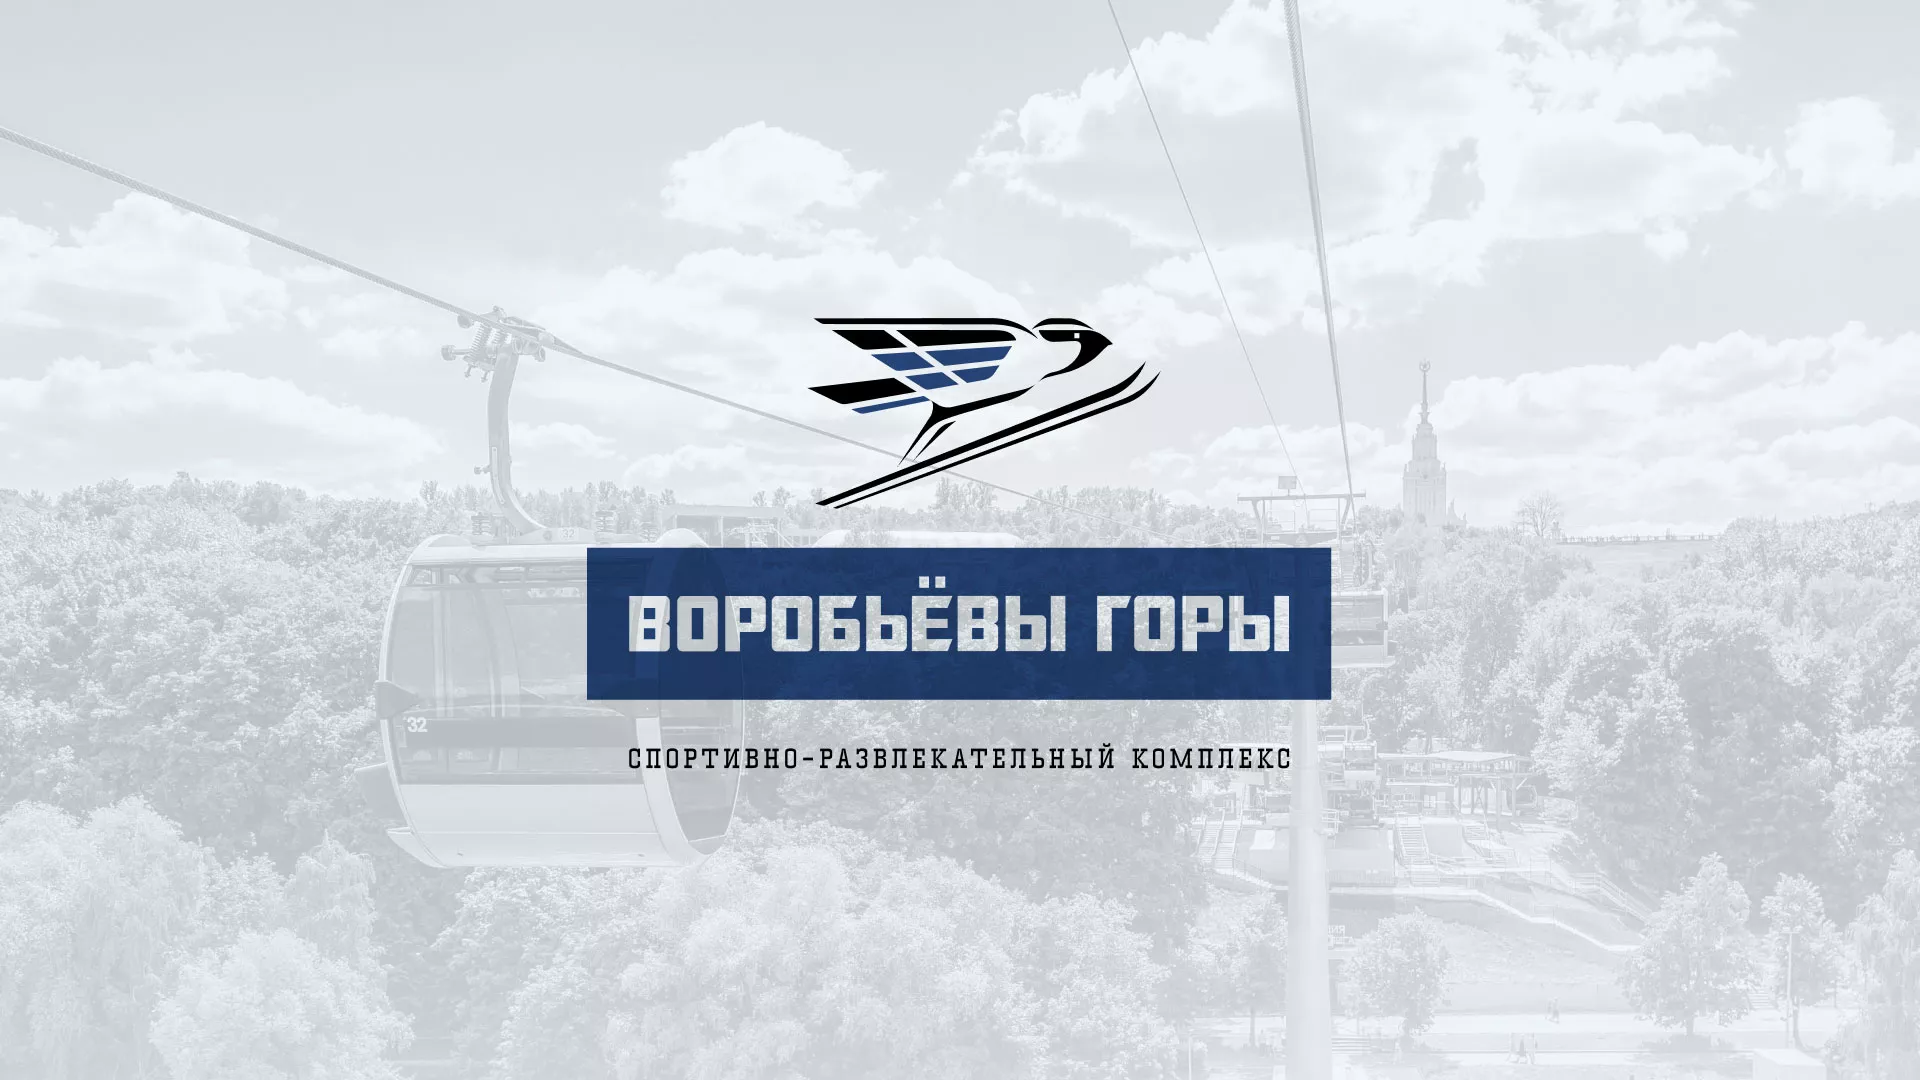 Разработка сайта в Дальнегорске для спортивно-развлекательного комплекса «Воробьёвы горы»